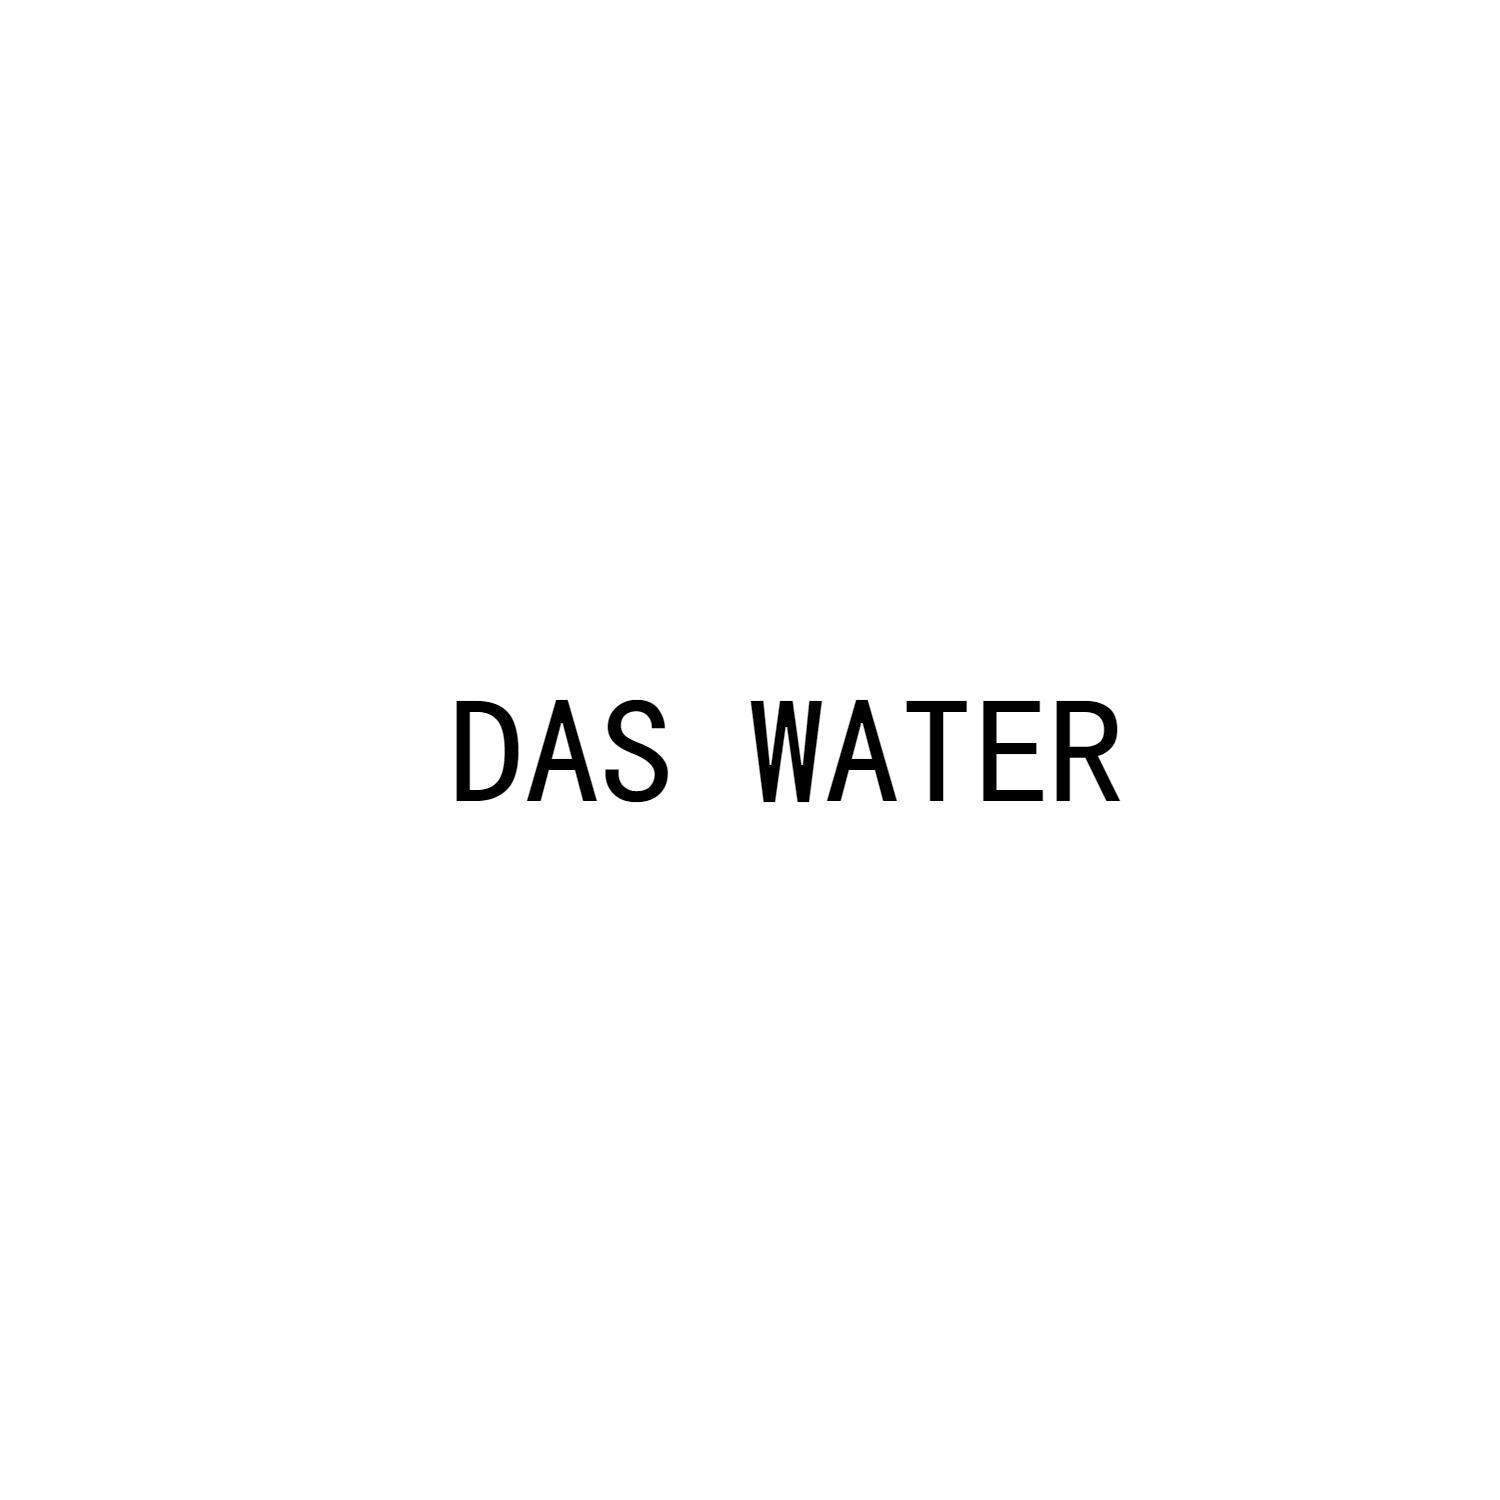 DAS WATER